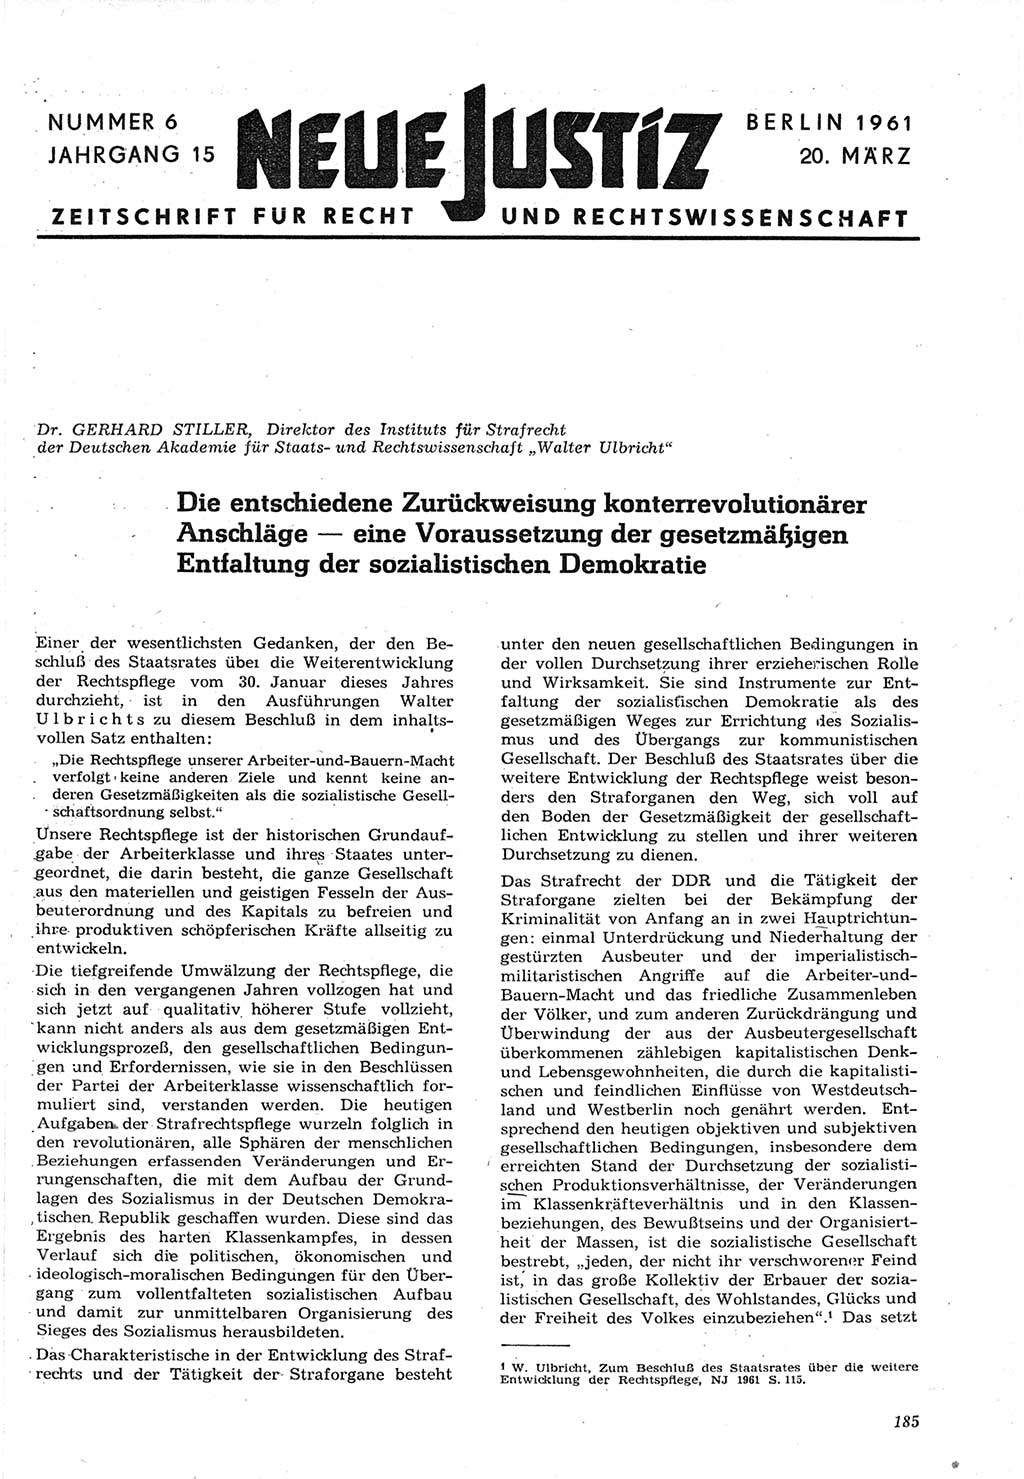 Neue Justiz (NJ), Zeitschrift für Recht und Rechtswissenschaft [Deutsche Demokratische Republik (DDR)], 15. Jahrgang 1961, Seite 185 (NJ DDR 1961, S. 185)